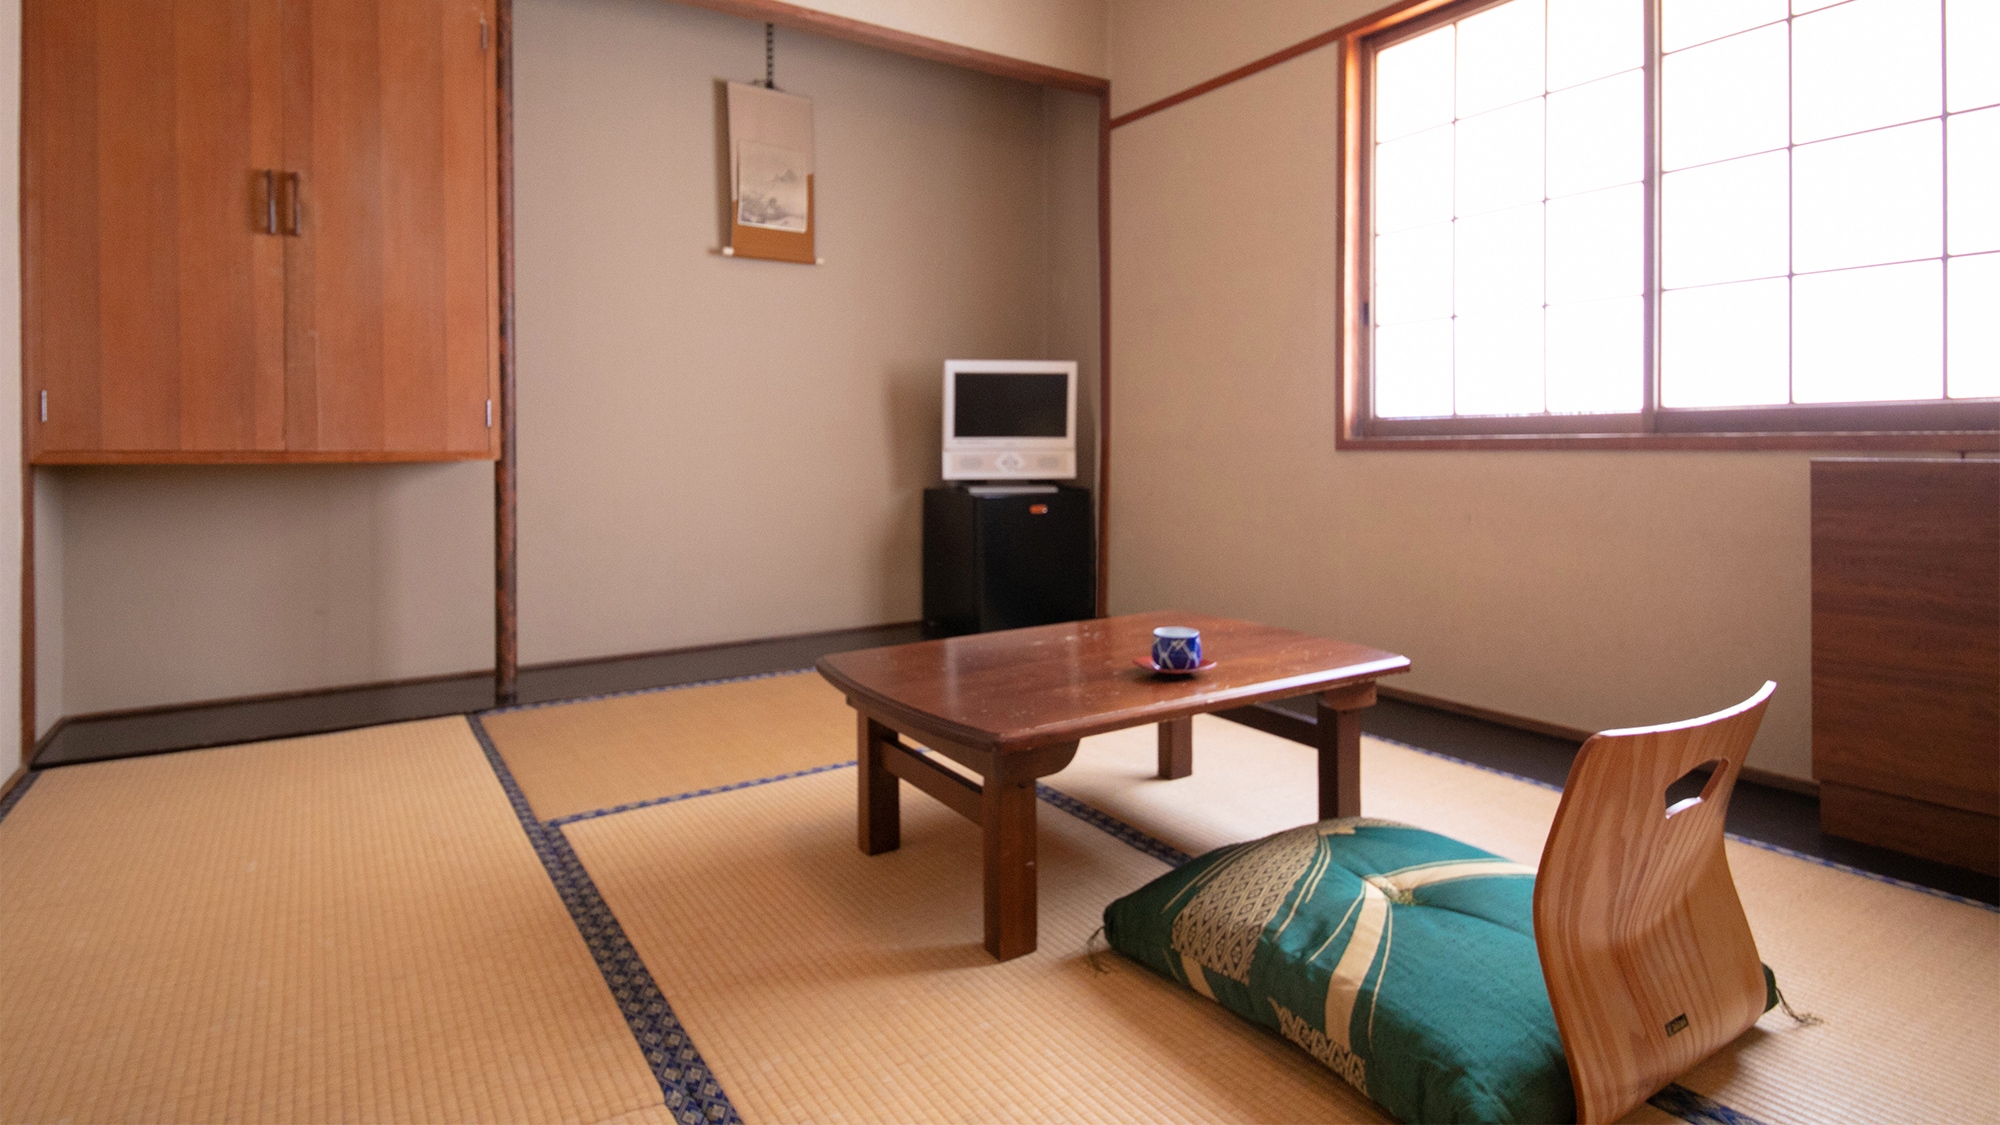 ■ ห้องสไตล์ญี่ปุ่น 6 เสื่อทาทามิ พร้อมอ่างอาบน้ำและห้องส้วม ■